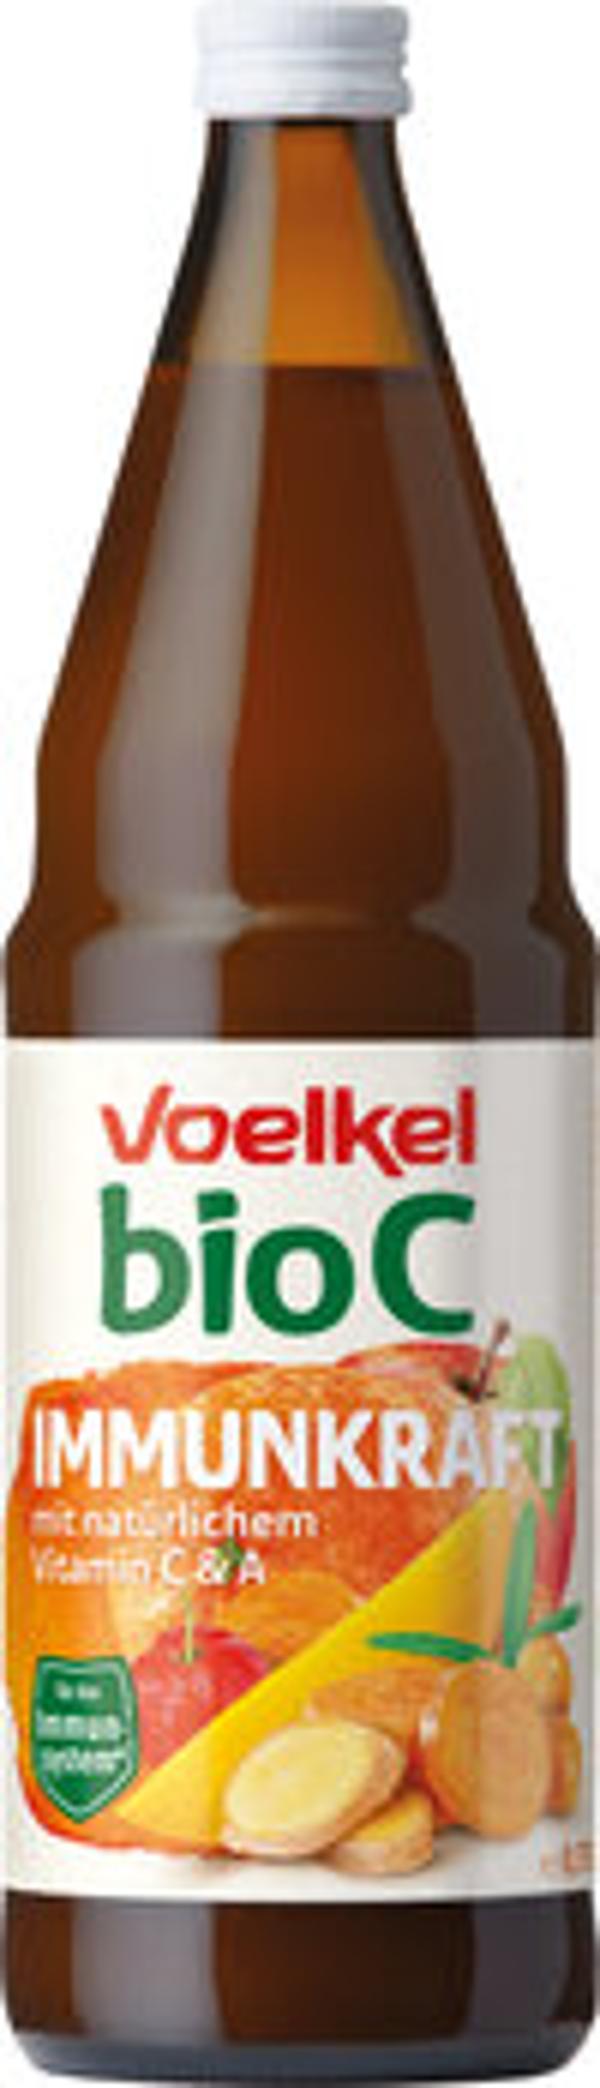 Produktfoto zu bioC Immunkraft, 0,75 l